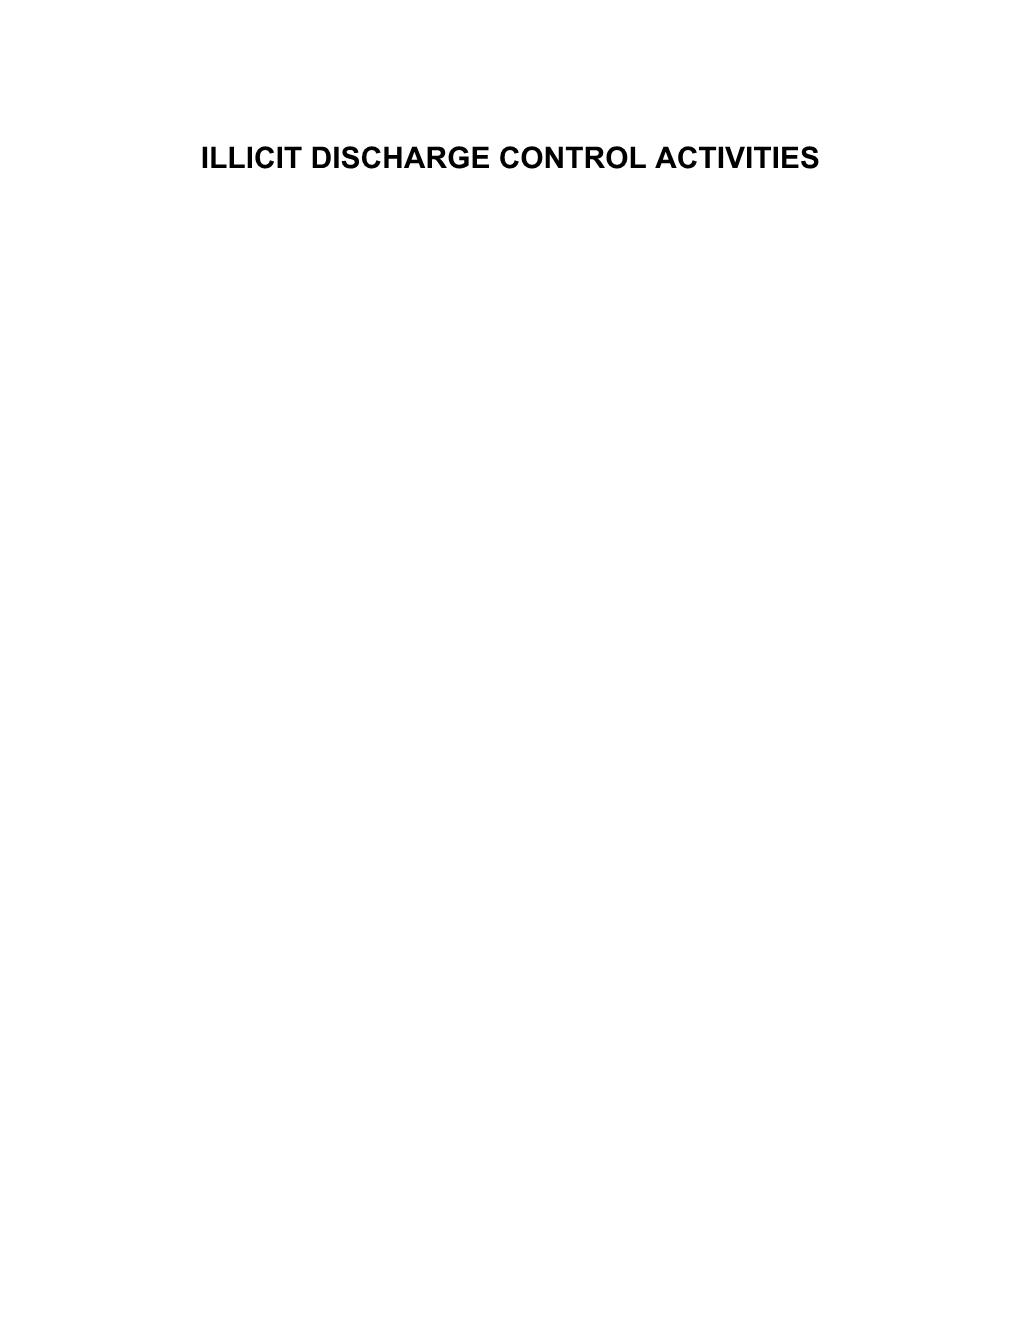 Illicit Discharge Control Activities